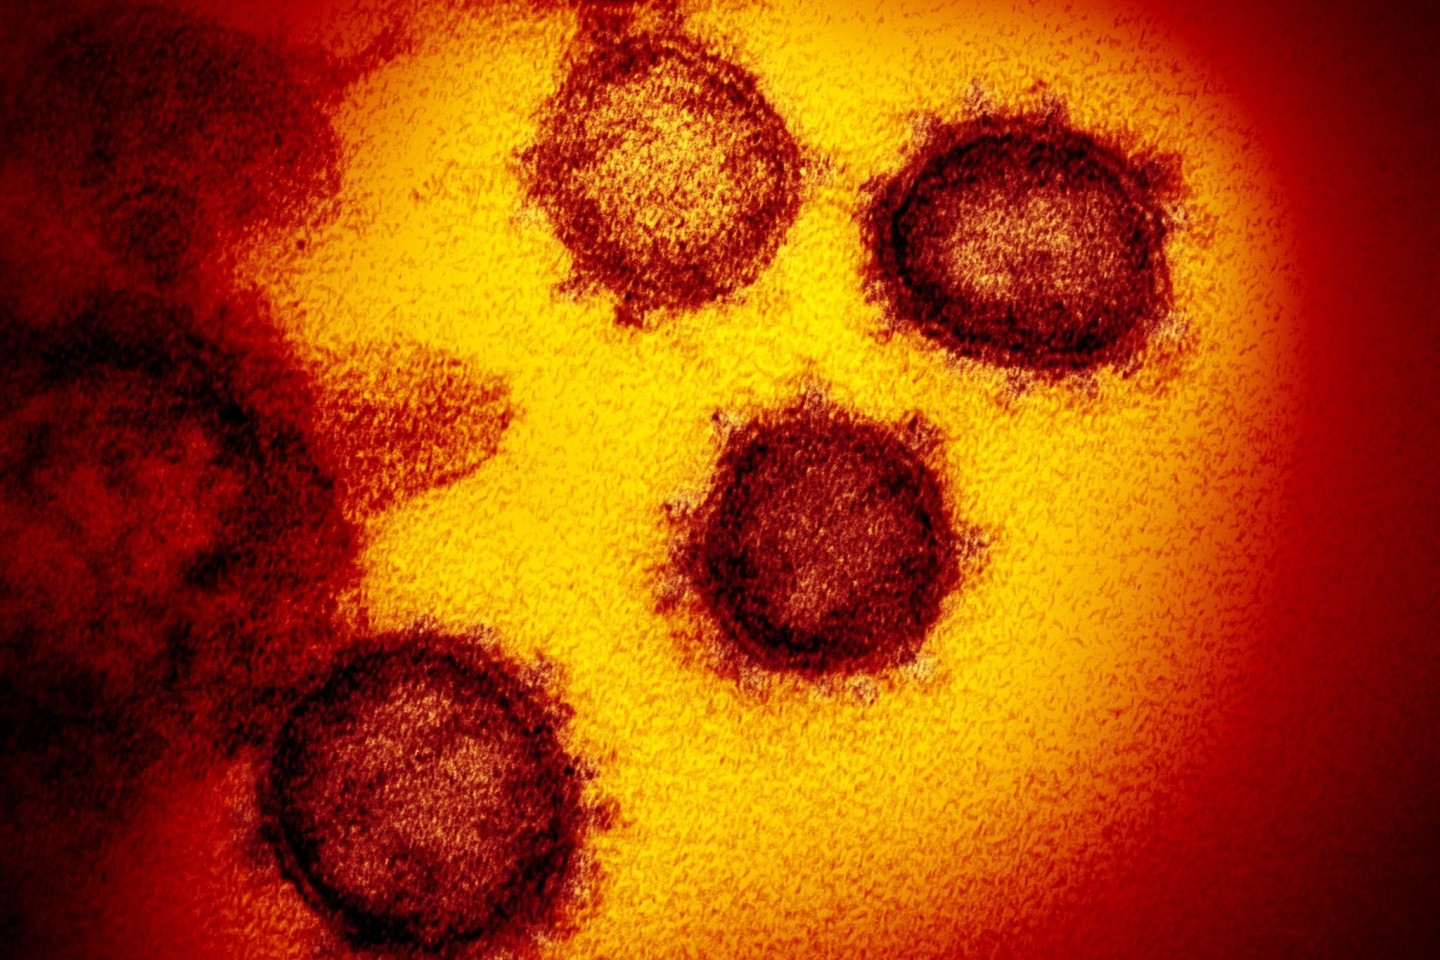 Die vom National Institute of Allergy and Infectious Diseases zur Verfügung gestellte Elektronenmikroskopaufnahme zeigt das Coronavirus SARS-CoV-2, das von einem Patienten in den USA isolie...